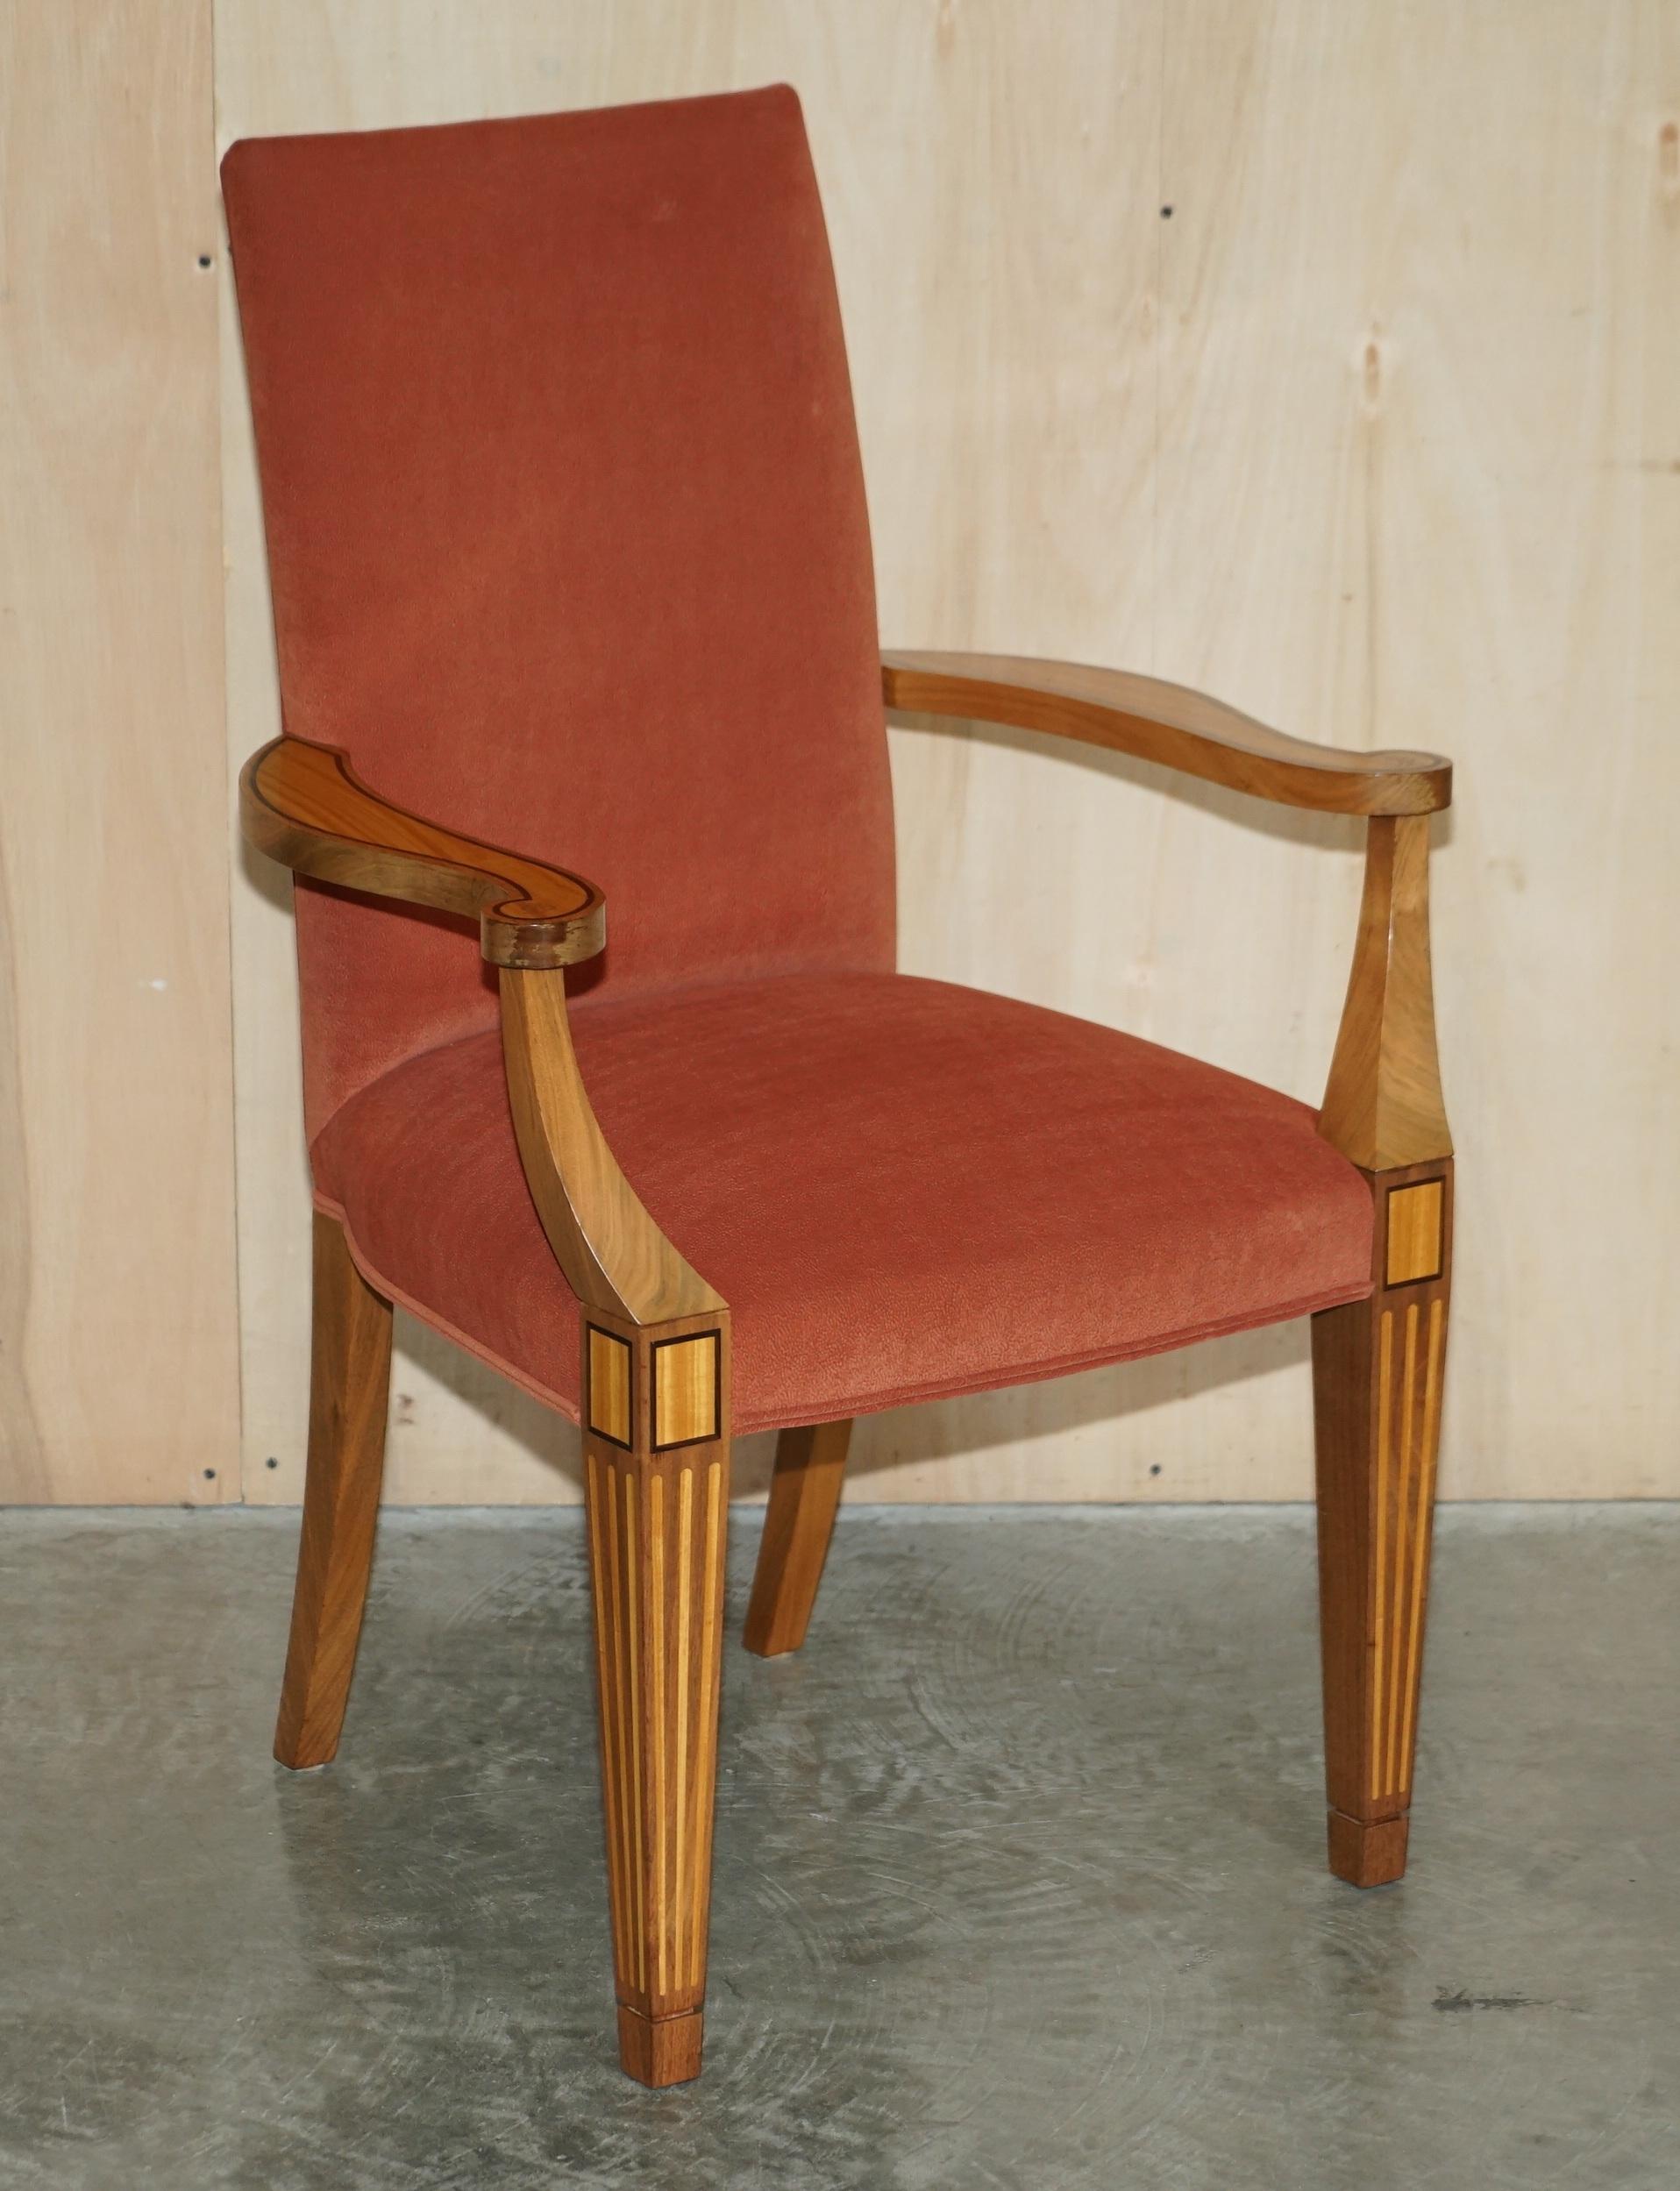 Wir freuen uns, dieses atemberaubende Paar geschnitzter Sessel aus Satinholz und Nussbaum von Viscount David Linley zum Verkauf anbieten zu können 

Ein sehr gut verarbeitetes und dekoratives Paar Beistellsessel, die in einer Bibliothek oder einem